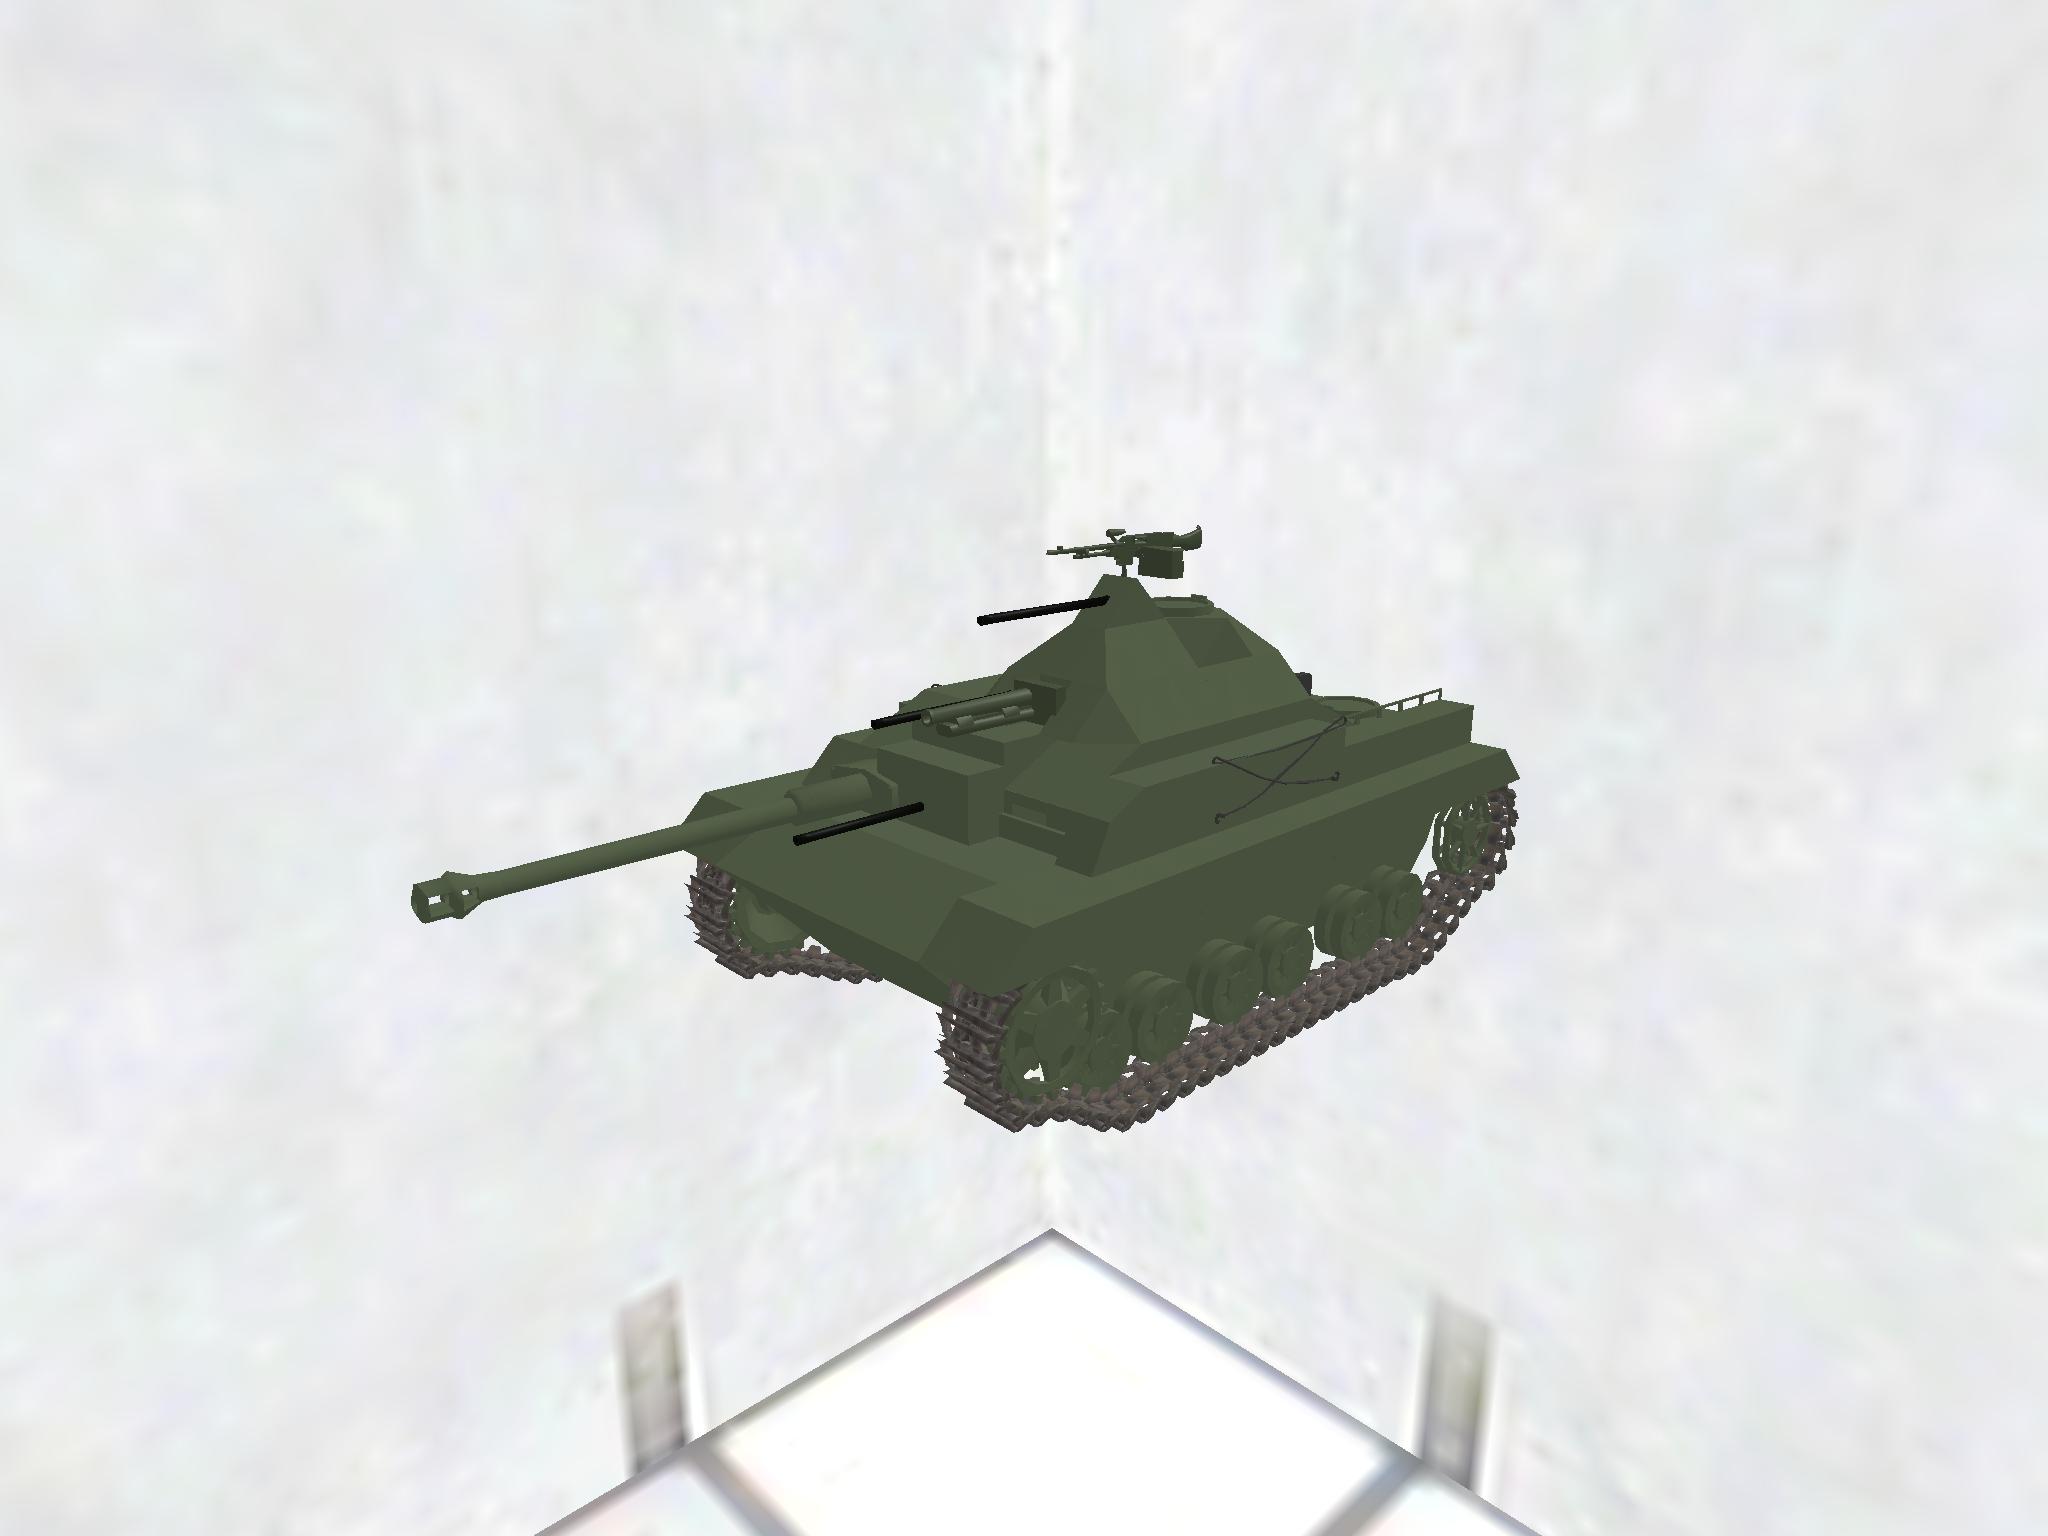 M3 StuG III